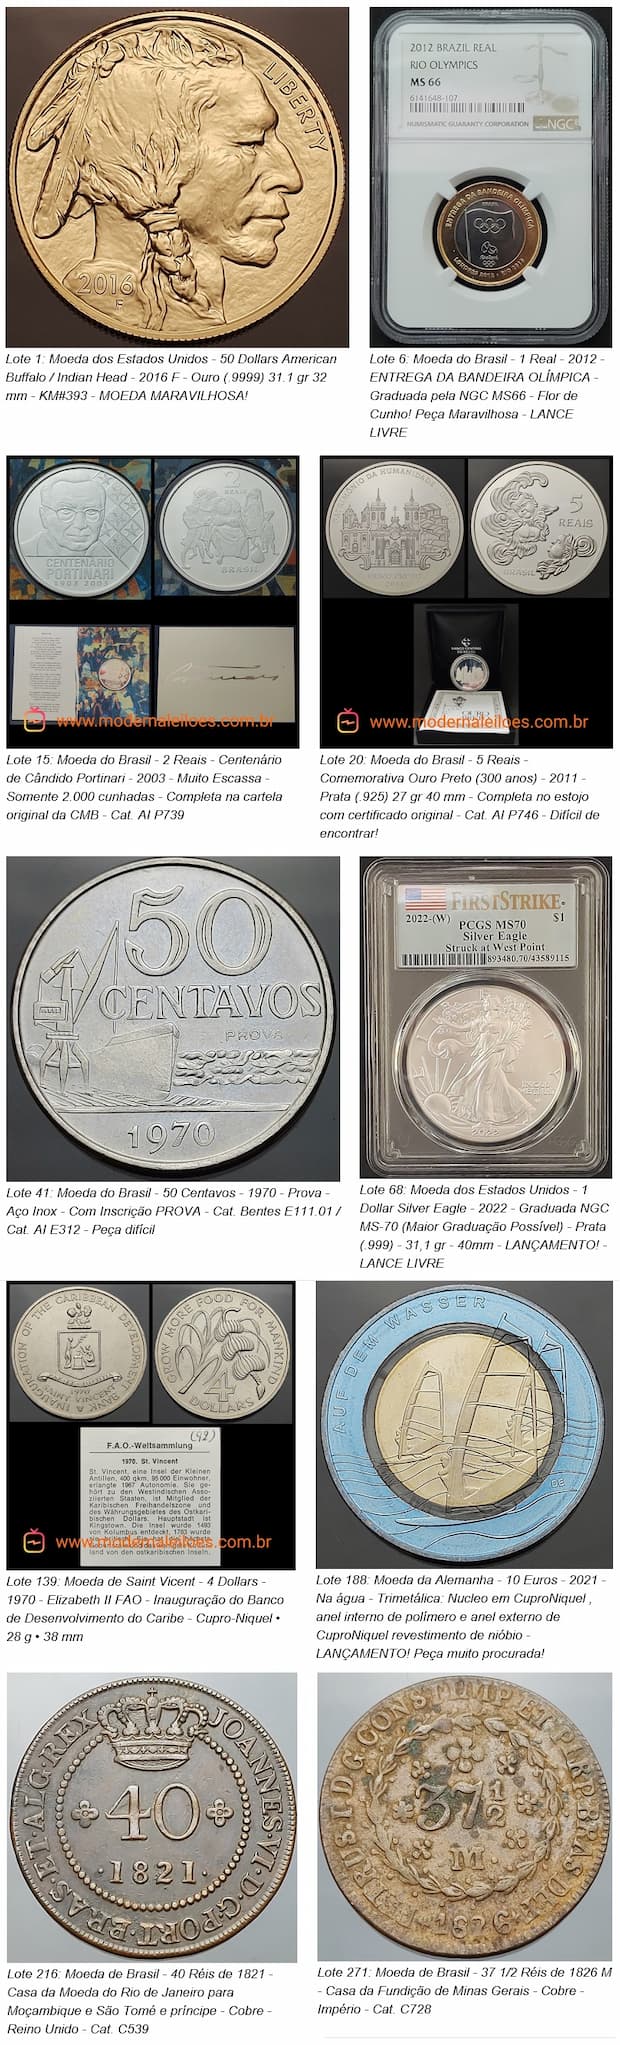 Flávia Cardoso Soares Auctions: 50º Vente aux enchères numismatique moderne - 31-05 à 19:00, faits saillants. Divulgation.